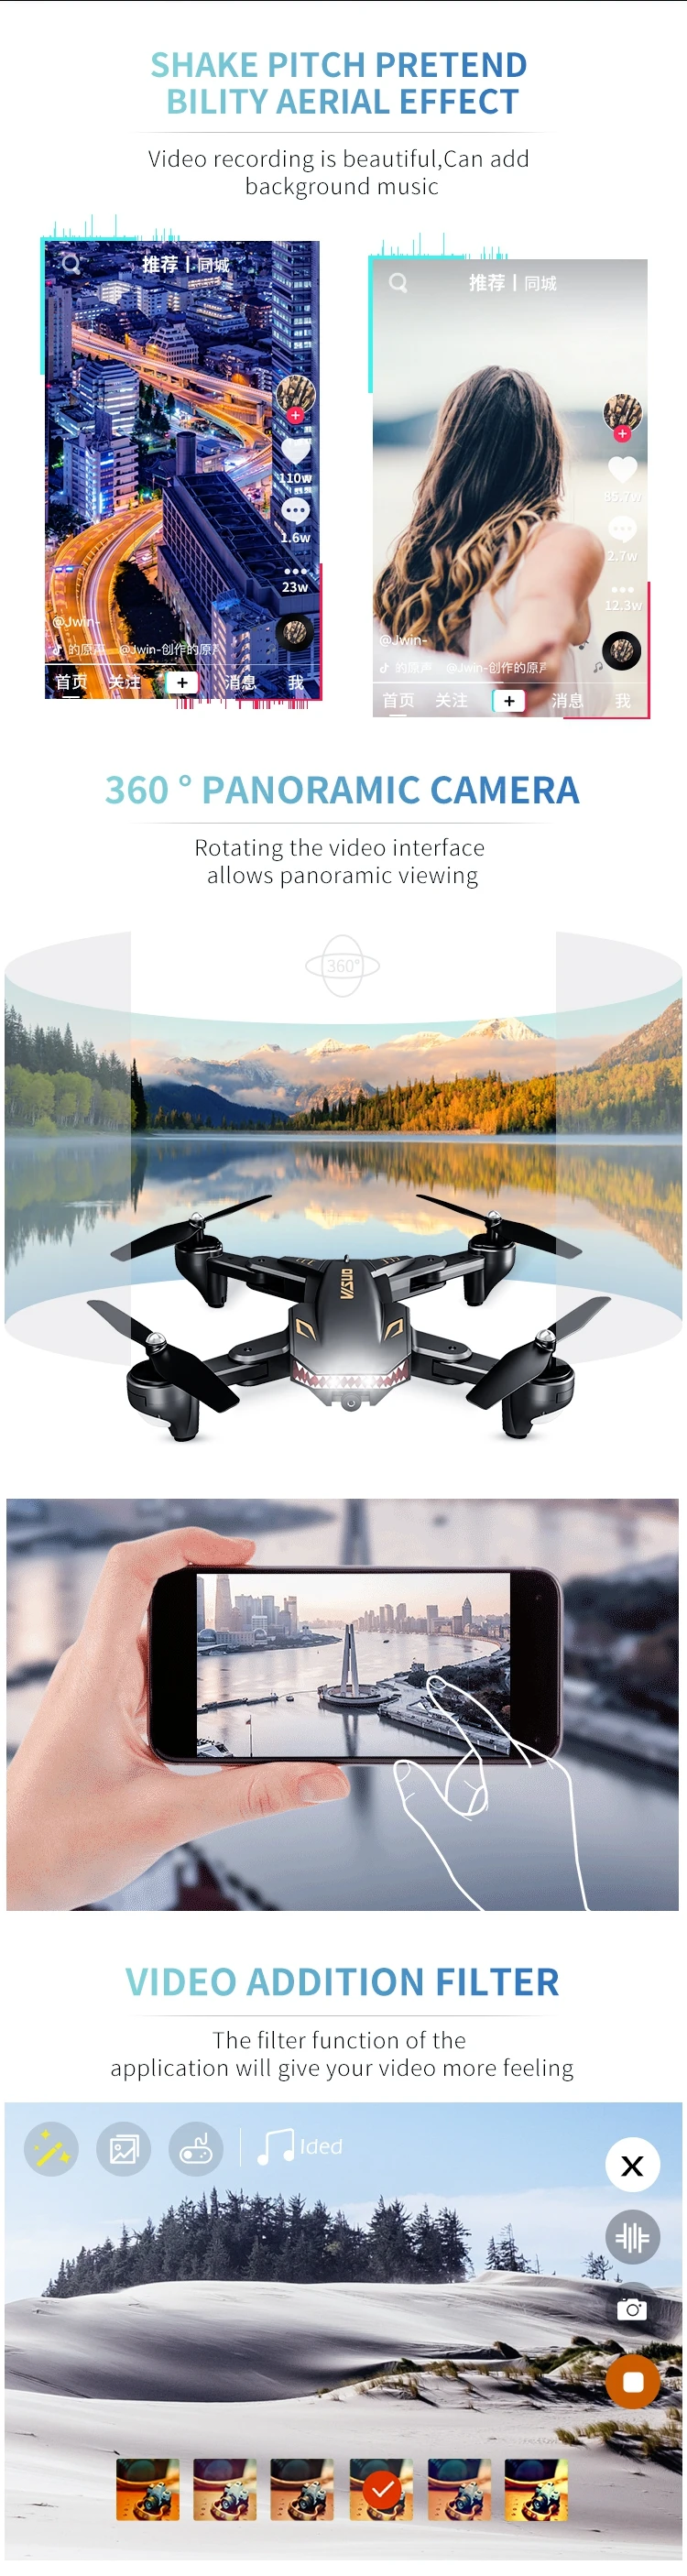 Dronă Visuo XS816 4K Cameră 4K cu transmisie pe telefon / zbor 20 min / Control gesturi / Altitudine automată / Pozitionare optica - iDrones.Ro